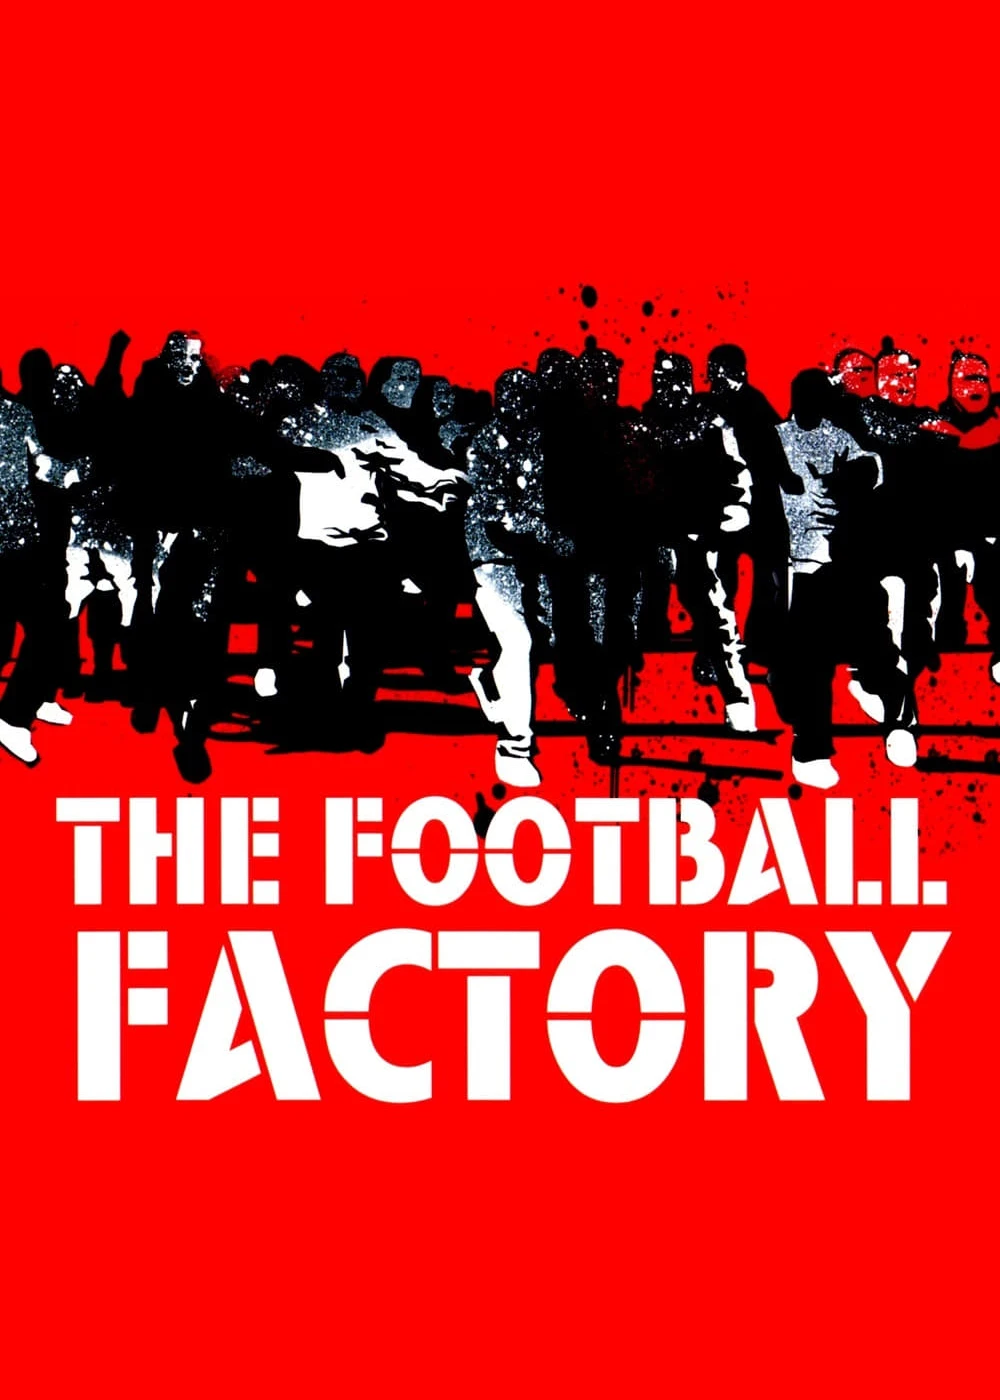 The Football Factory | The Football Factory (2004)